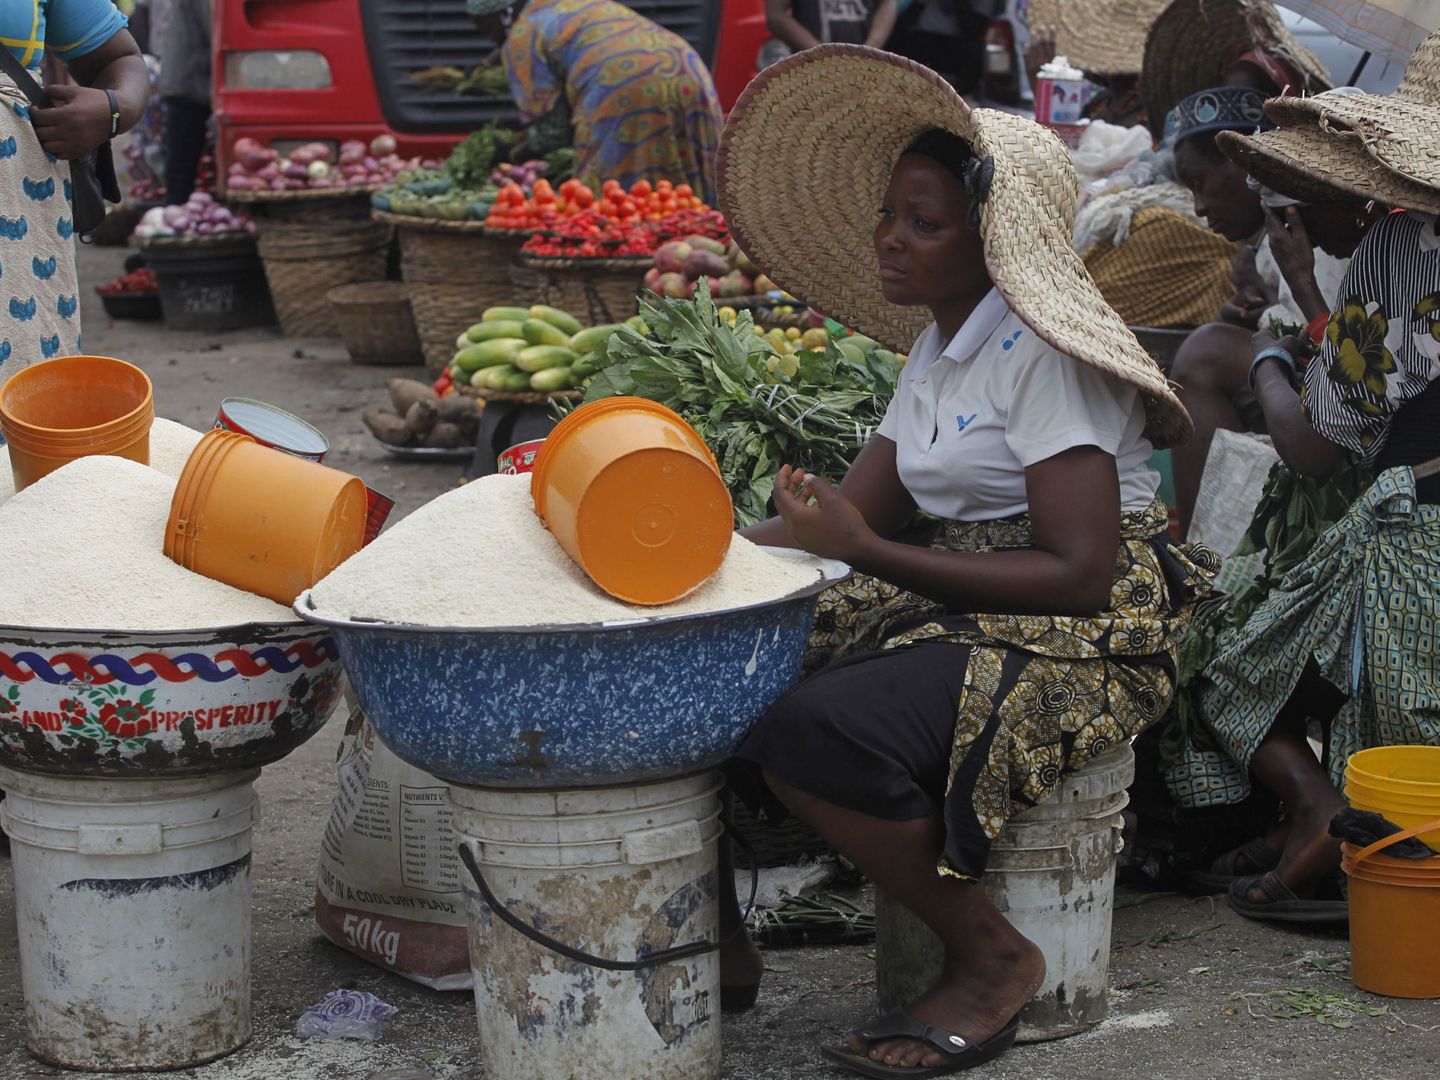 Mercado de comida en Nigeria. (Reuters)